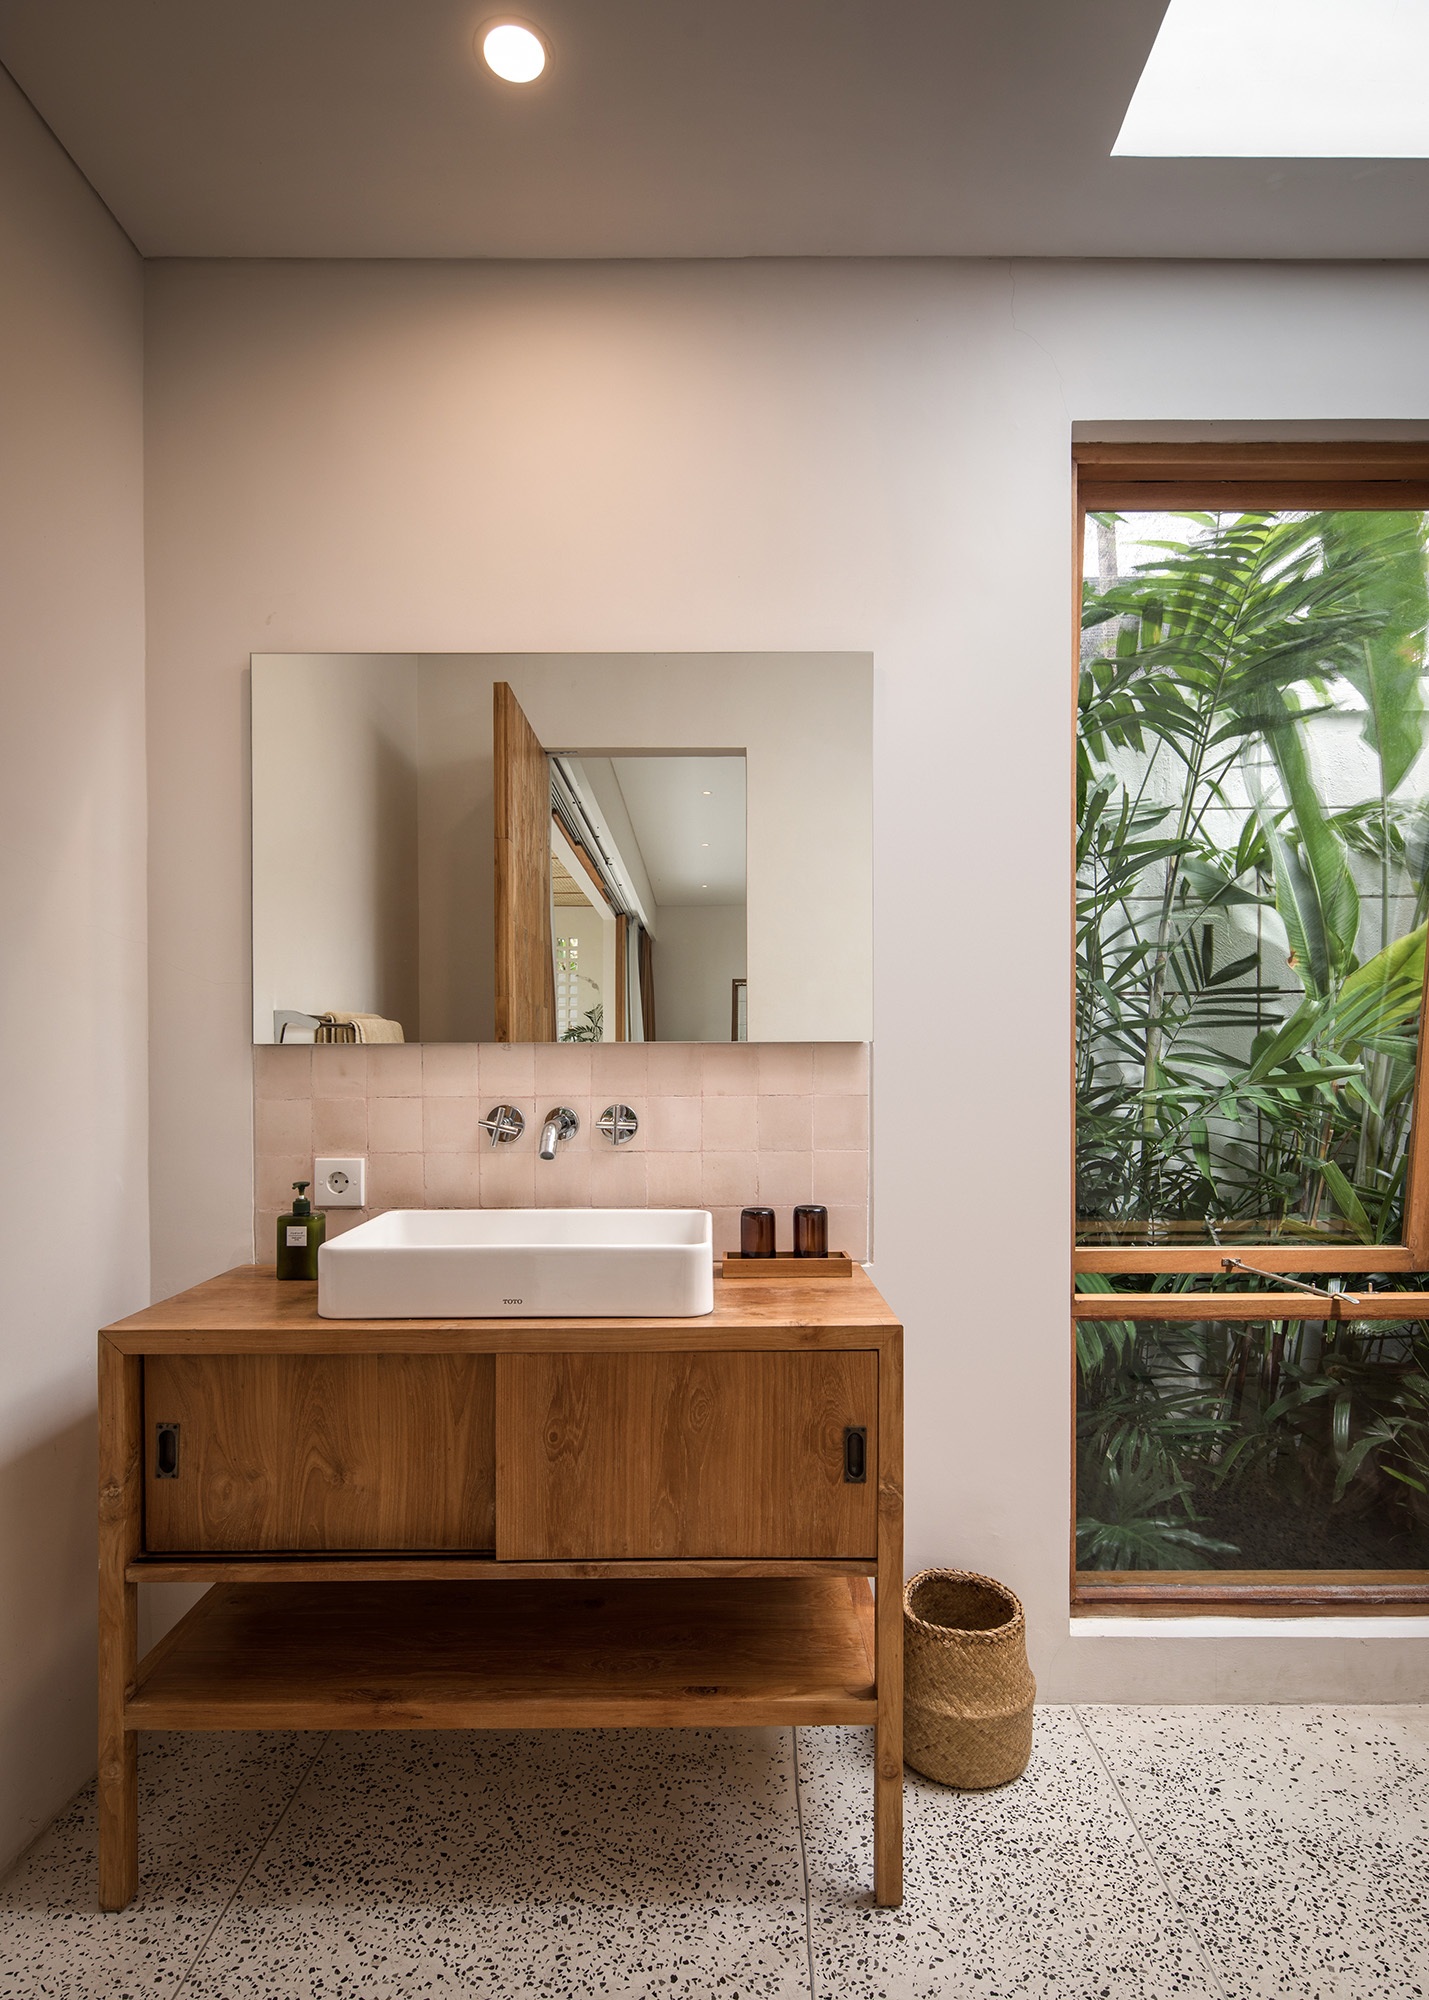 Design Assembly - Two Palms Studio - Bali Architect - Interior Design - Bali Villa - Bathroom